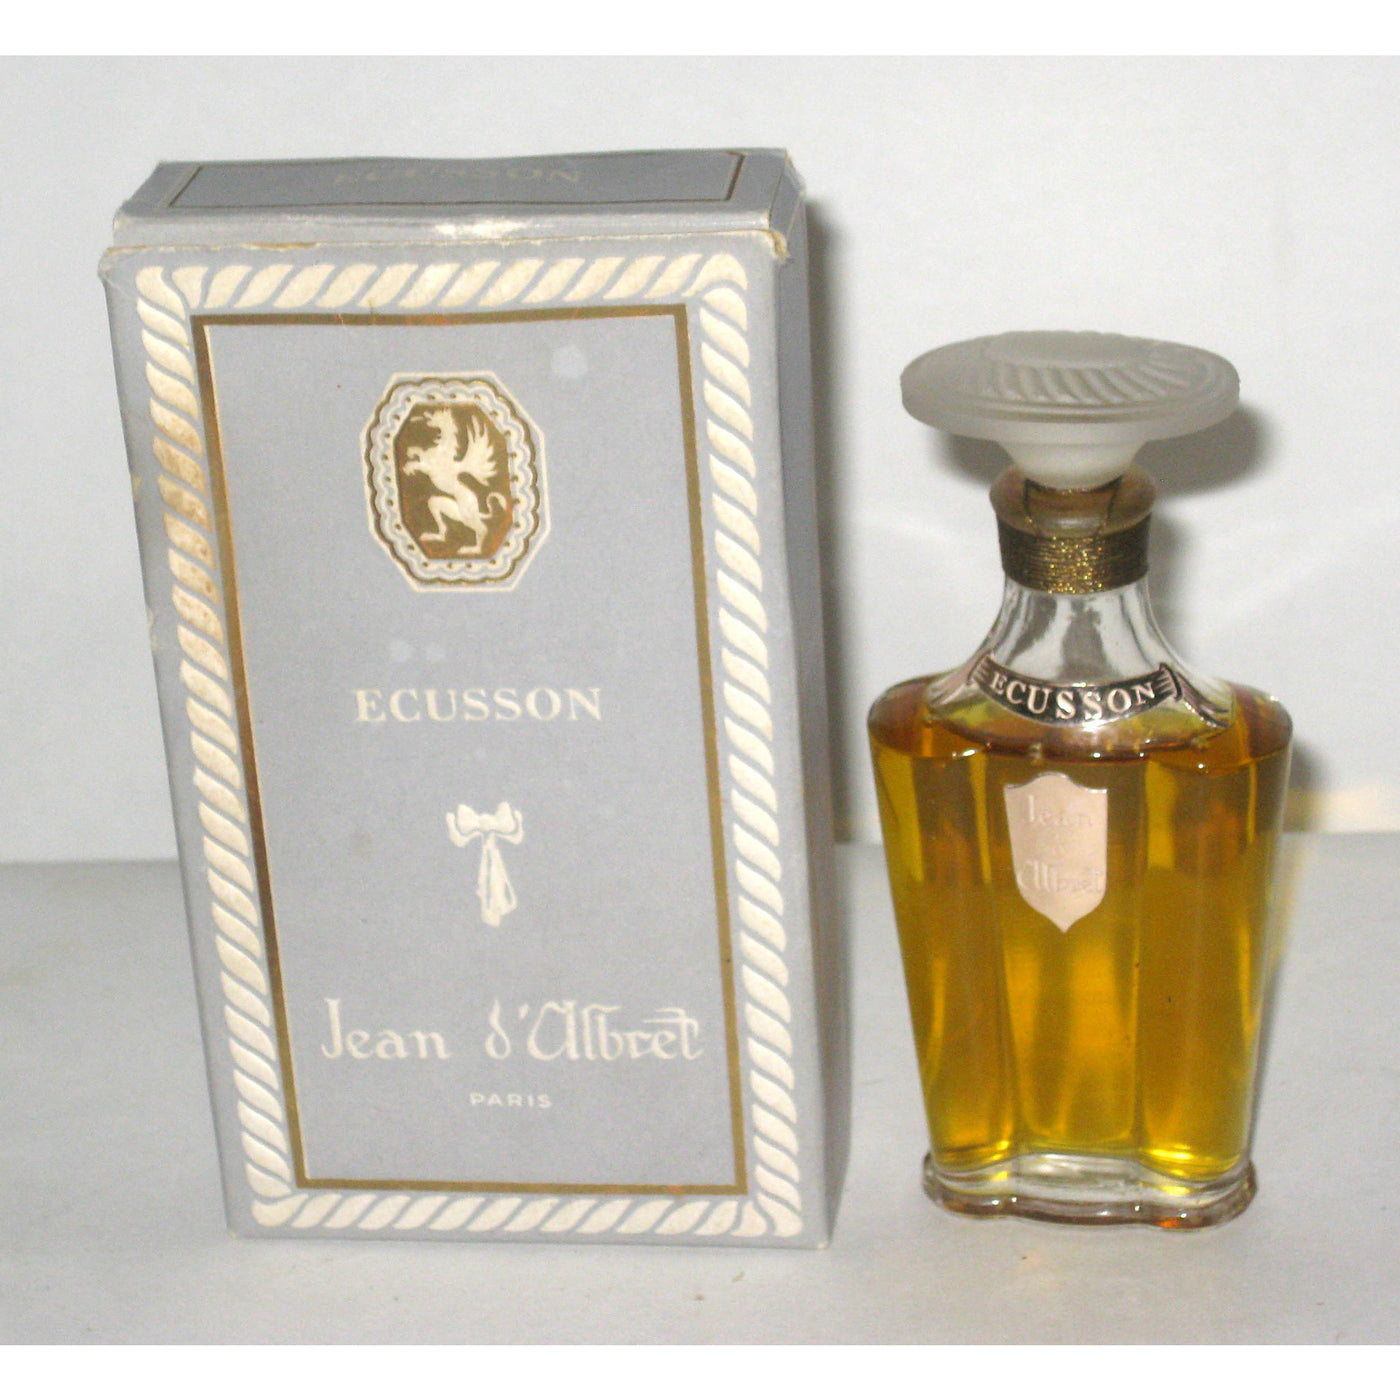 Vintage Jean D'Albret Ecusson Perfume